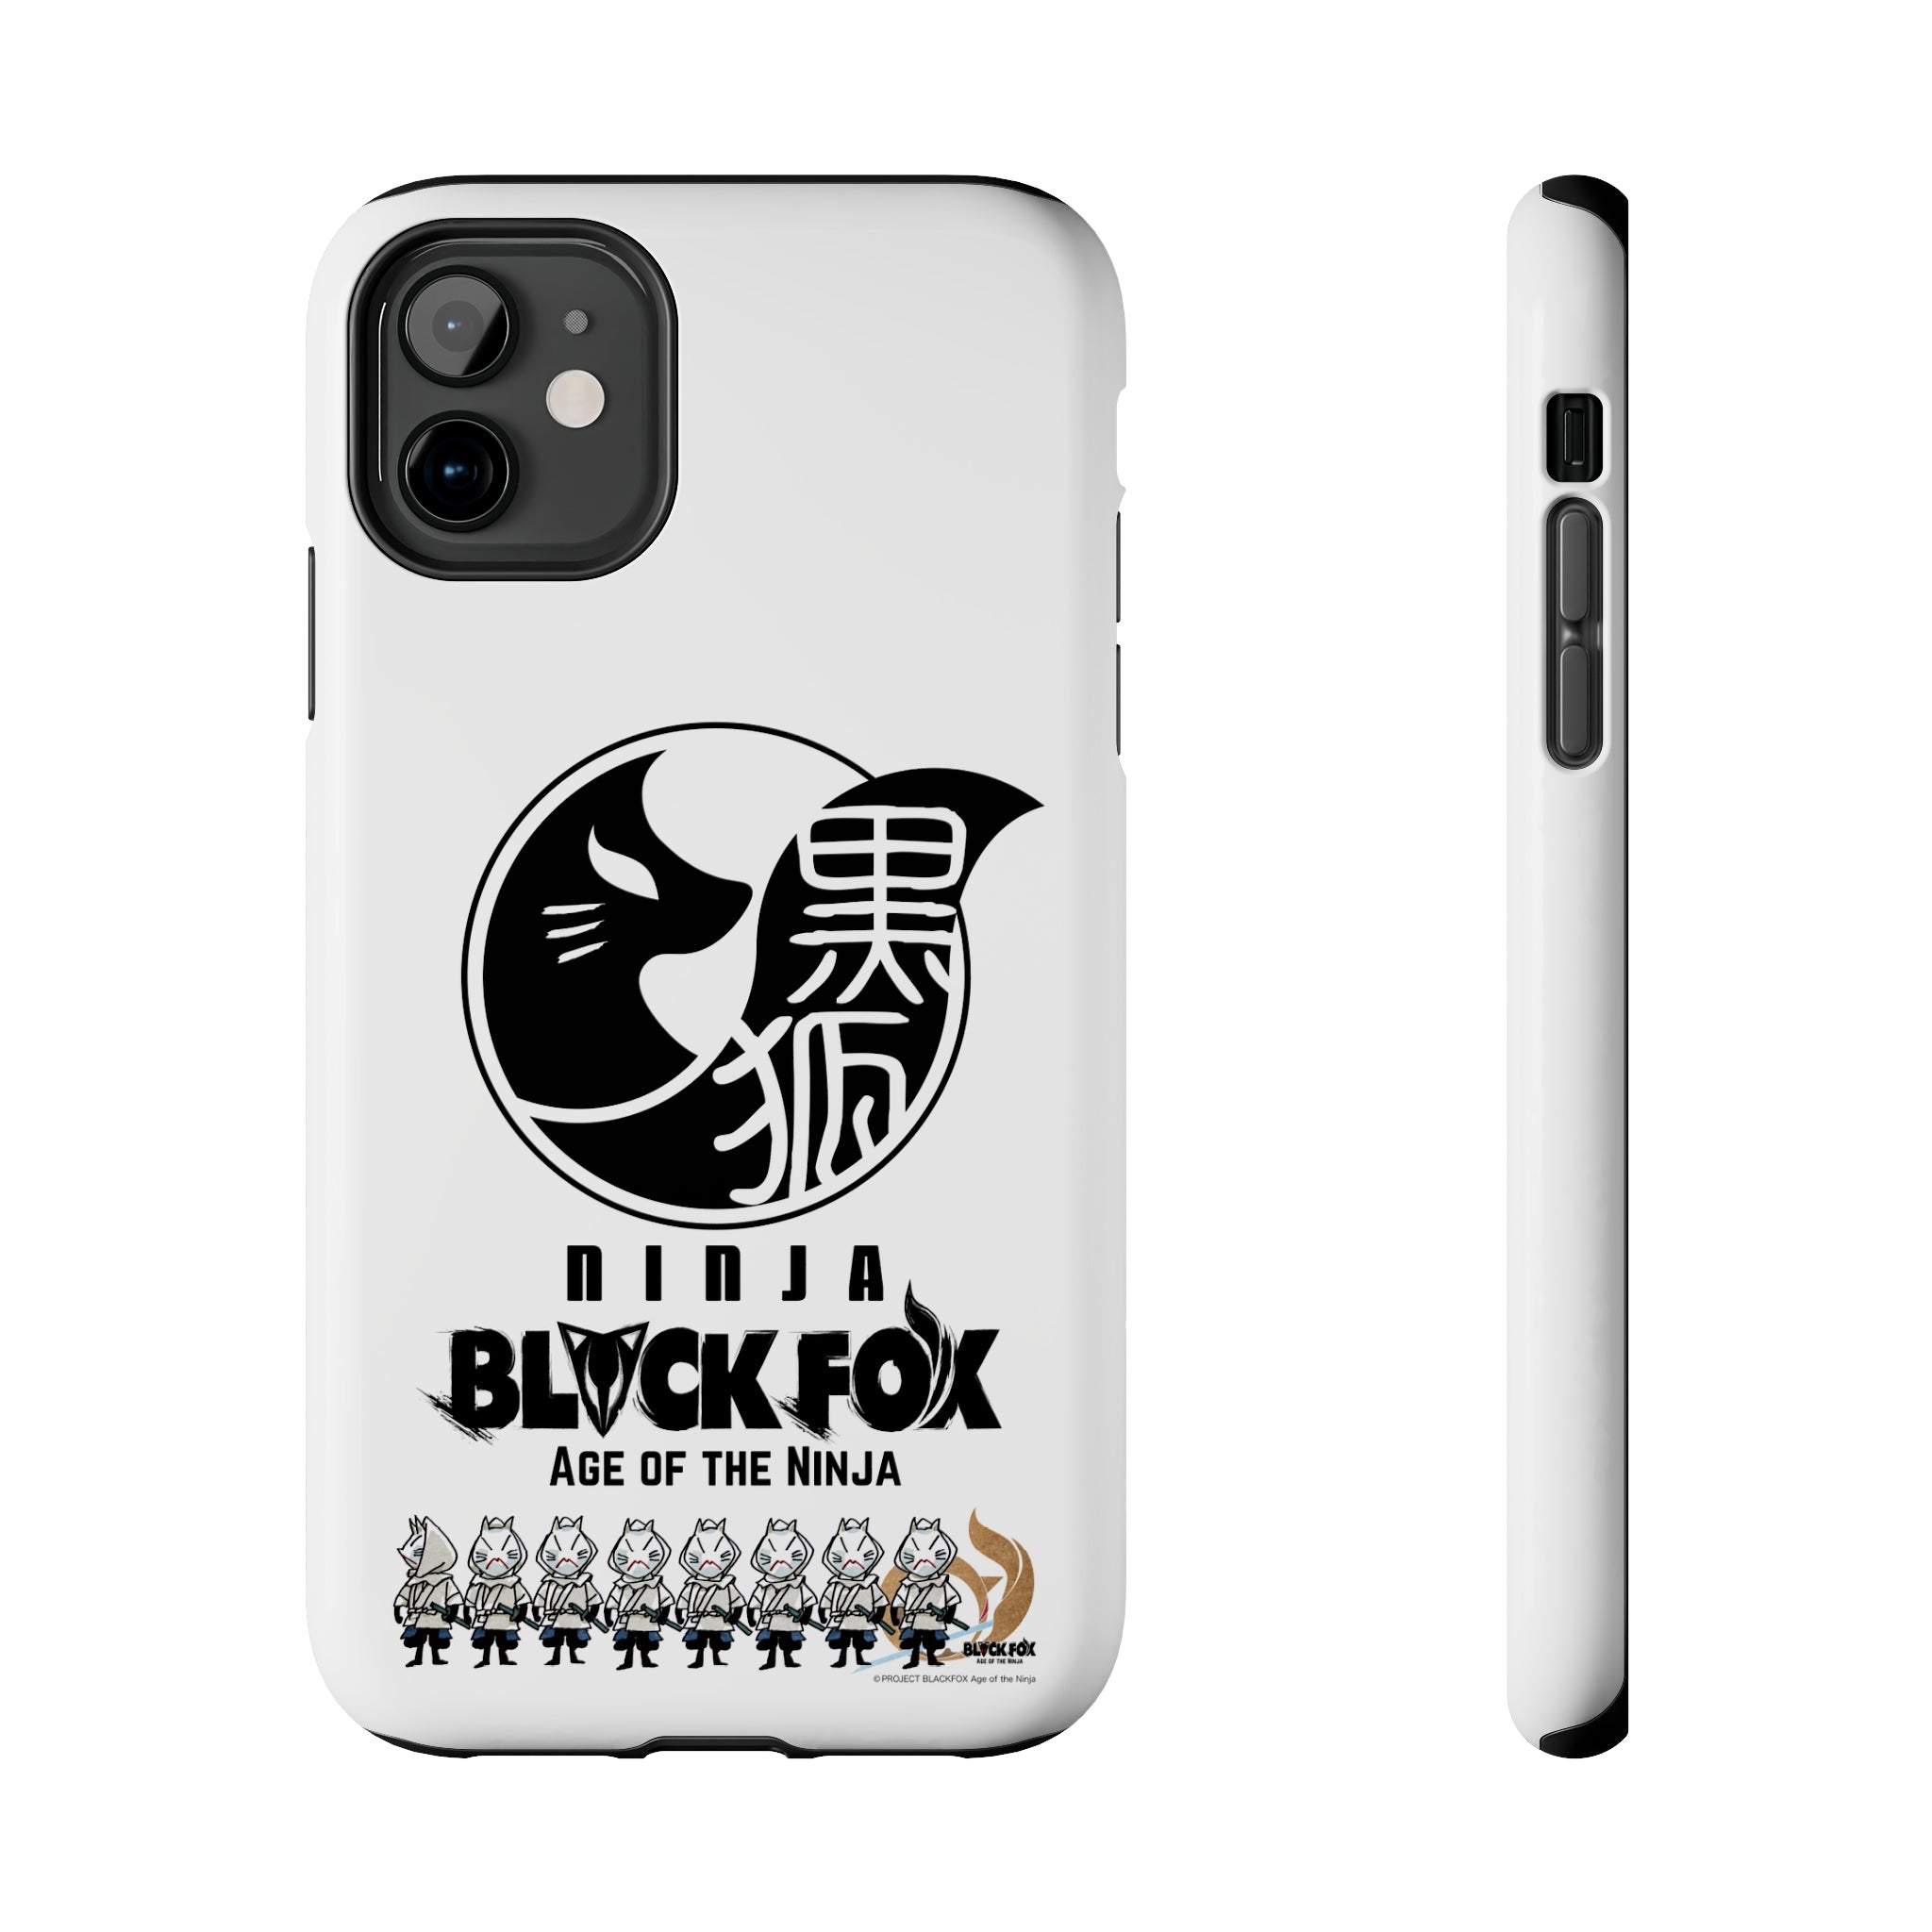 BLACKFOX "WHITE FOXES" Tough Phone Case (White)